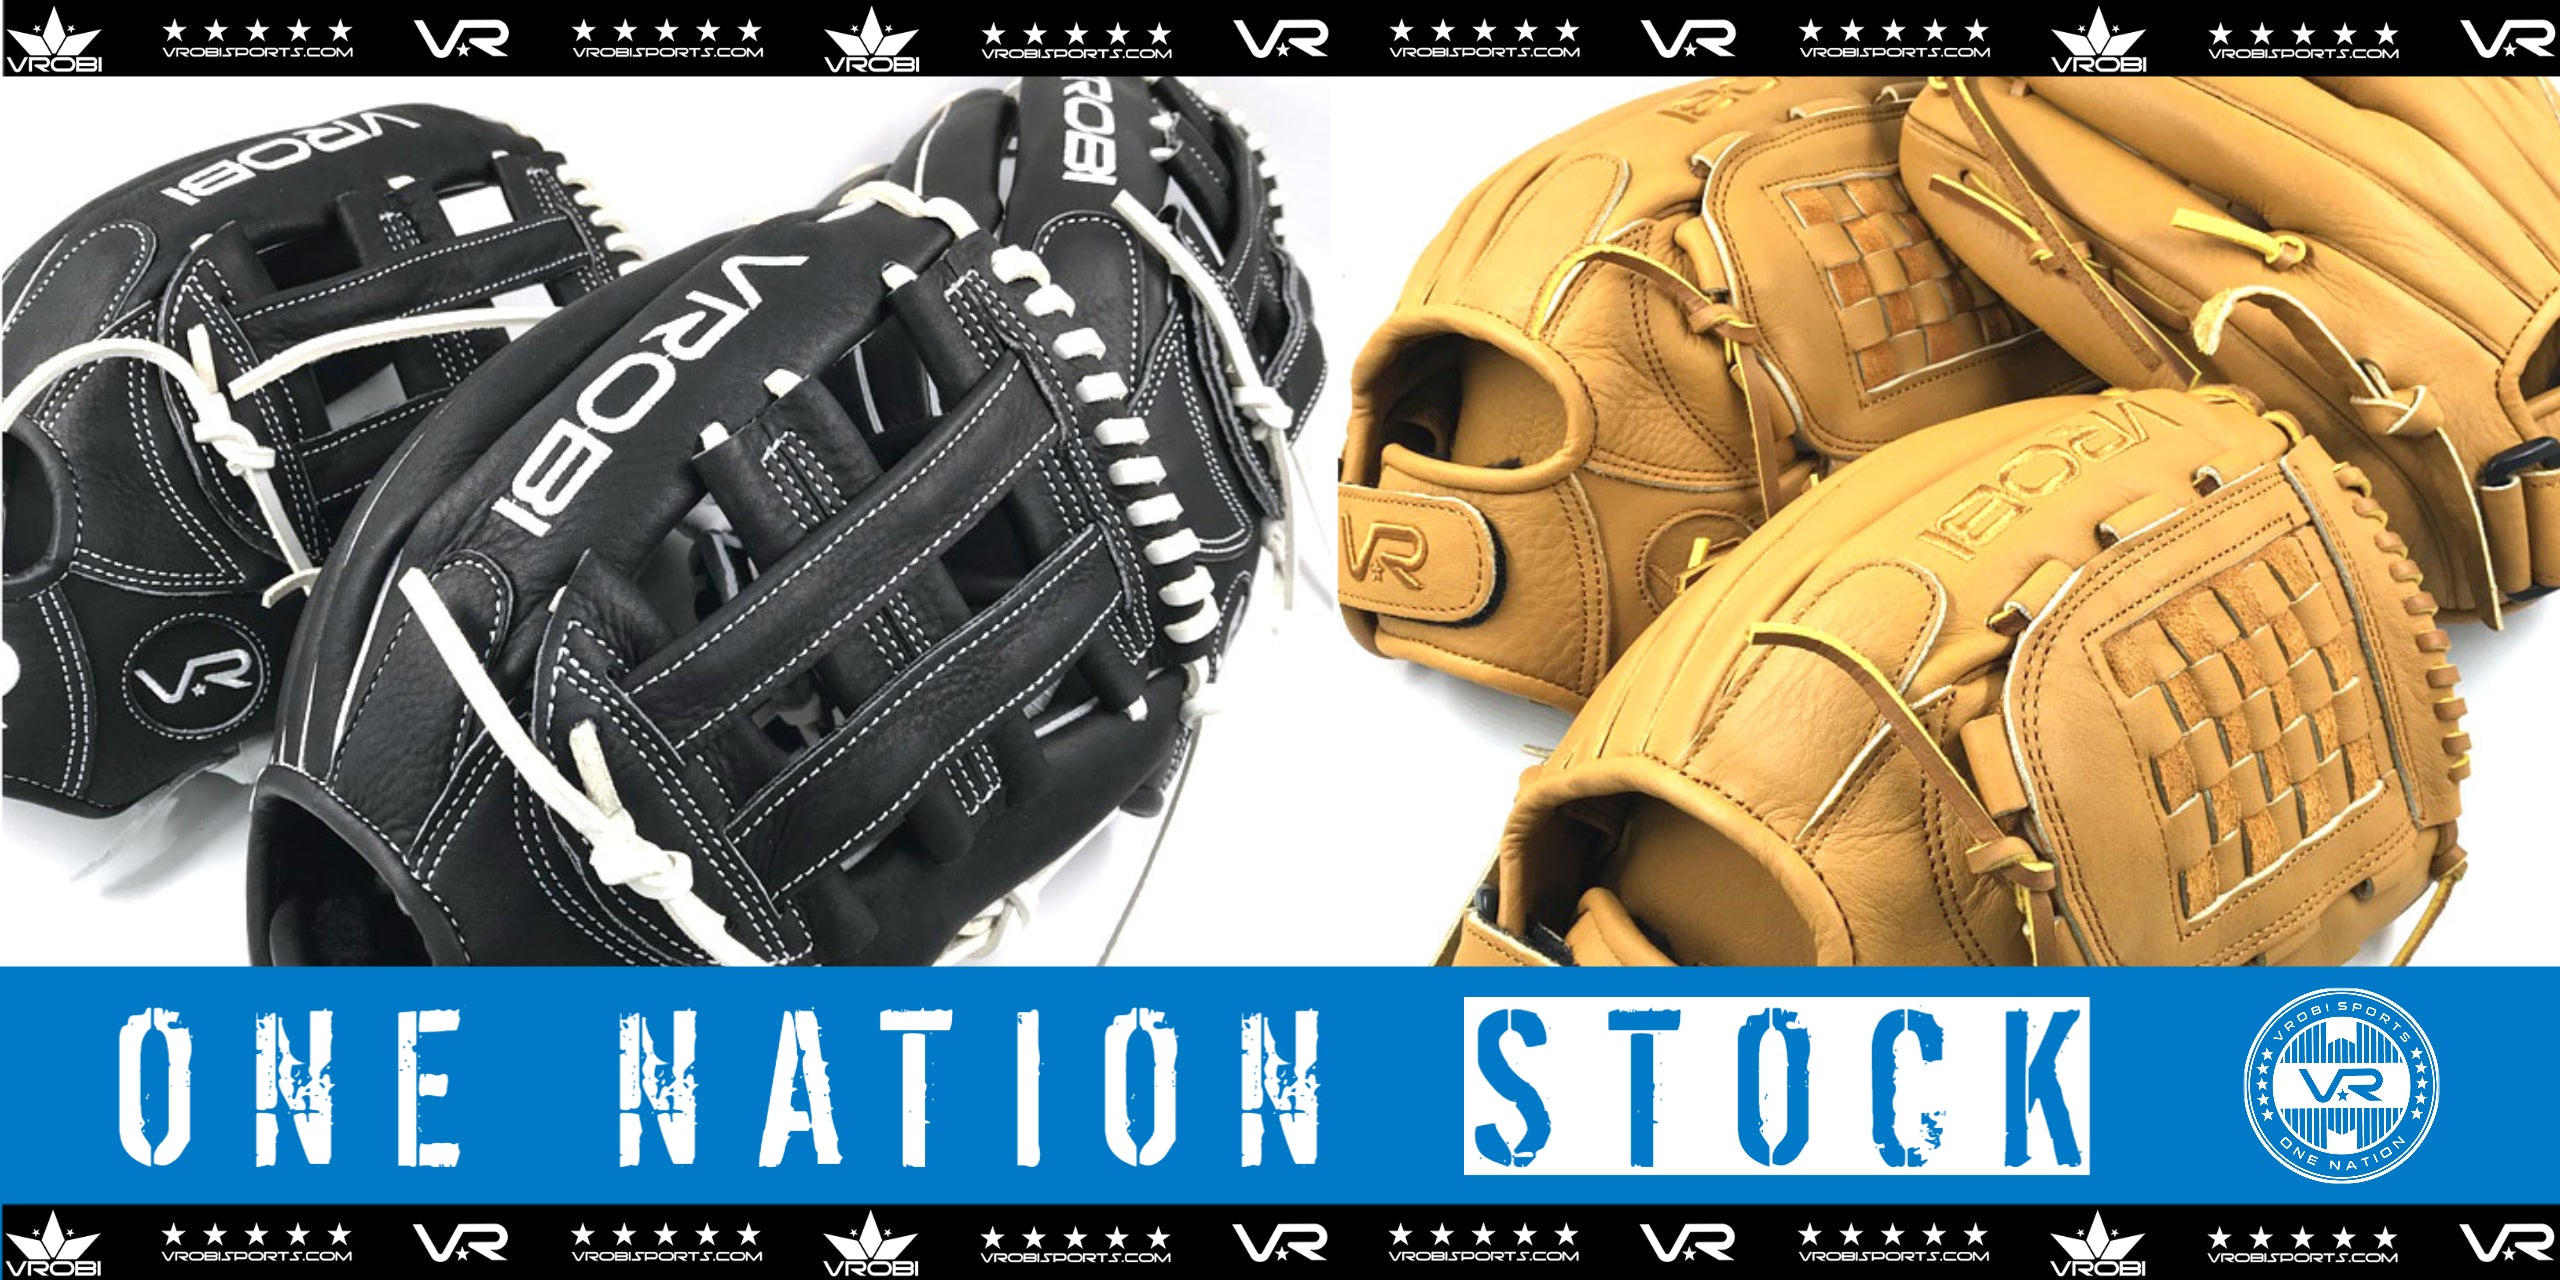 Source Custom Design Hot Sale Baseball Glove Leather Baseball Fielding  Gloves Softball Adult Baseball Gloves on m.